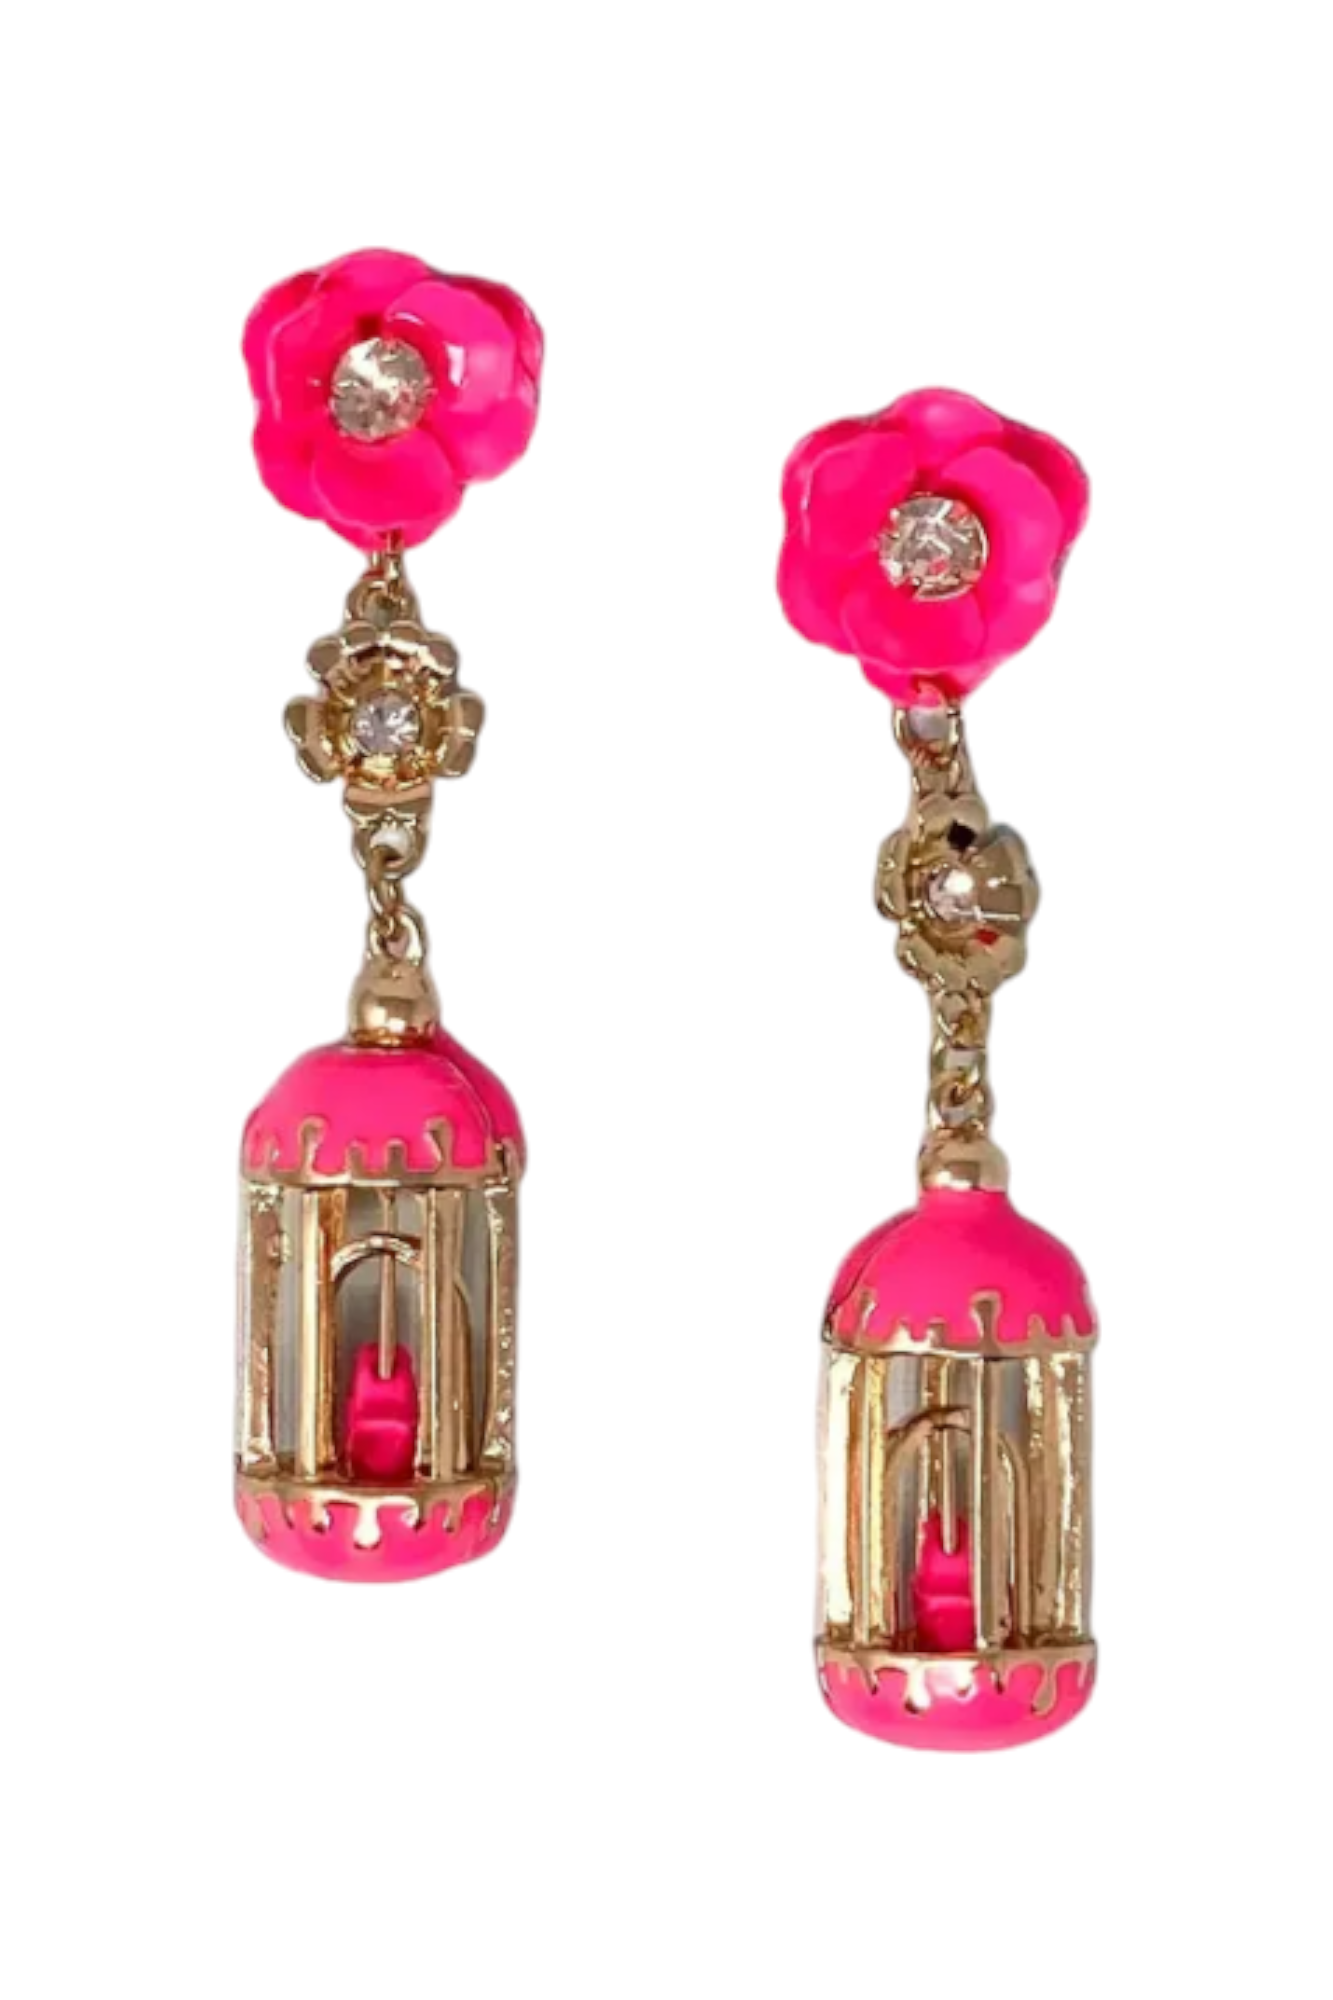 Birdcage Earrings: Hot Pink